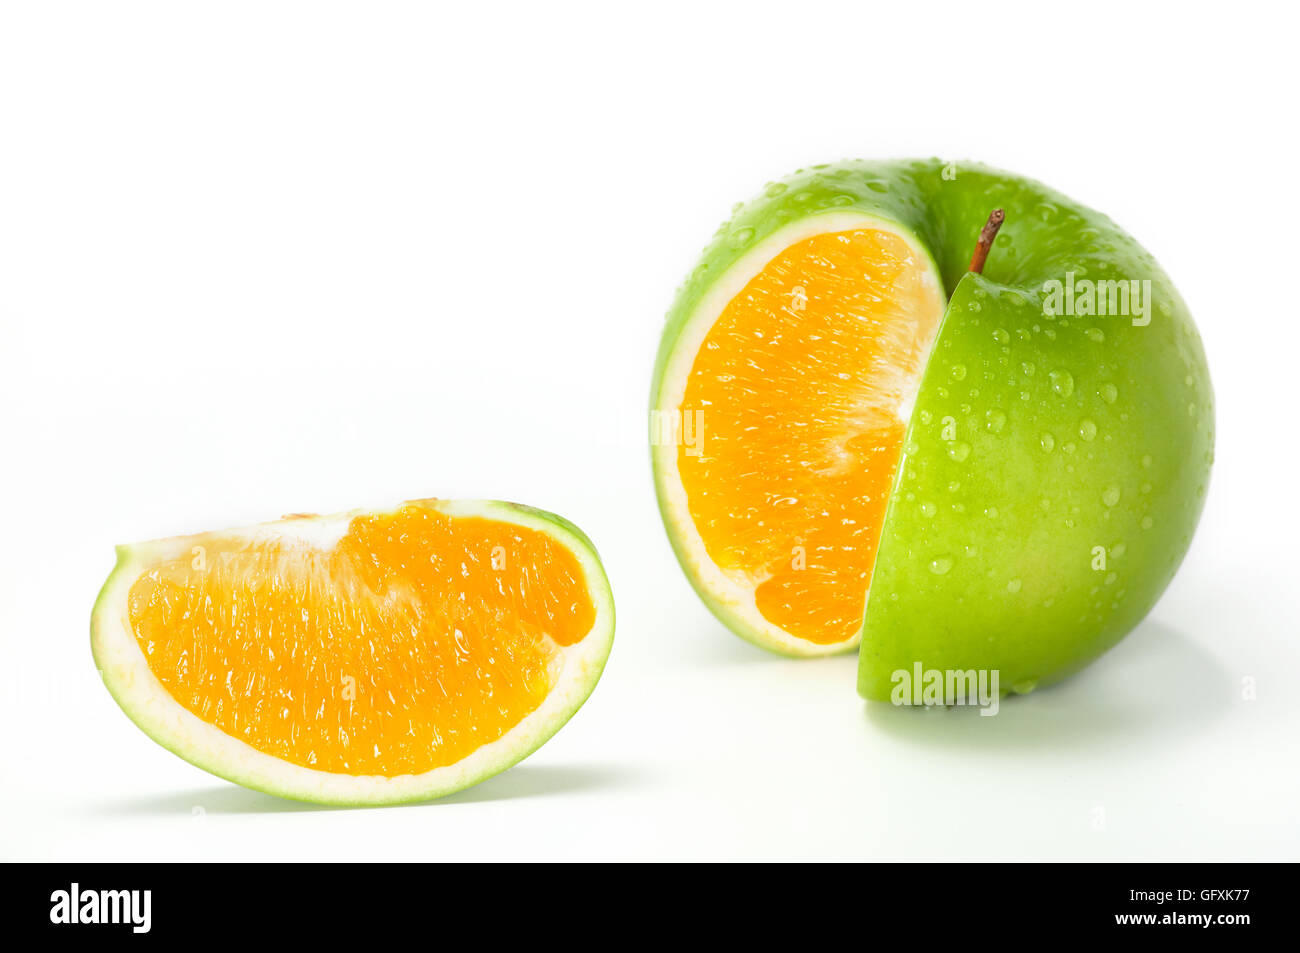 Apple Orange Hybrid. Close-up image of fresh green apple combined with orange. Stock Photo